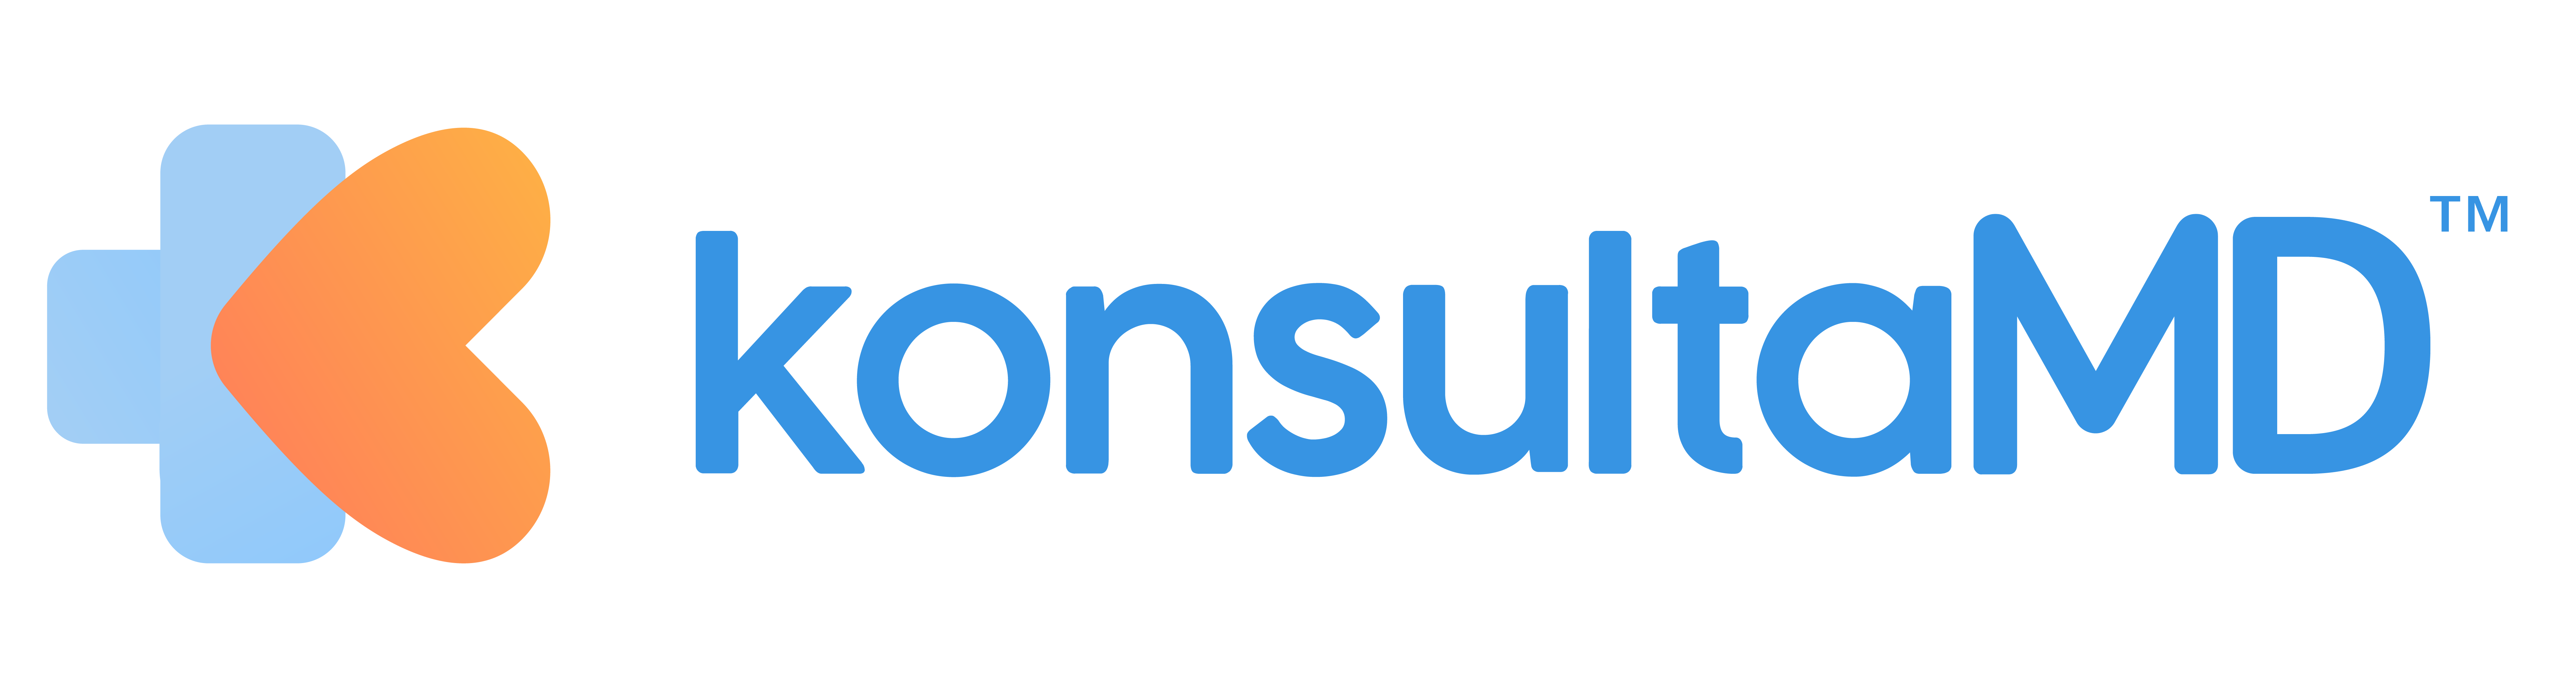 KonsultaMD Logo